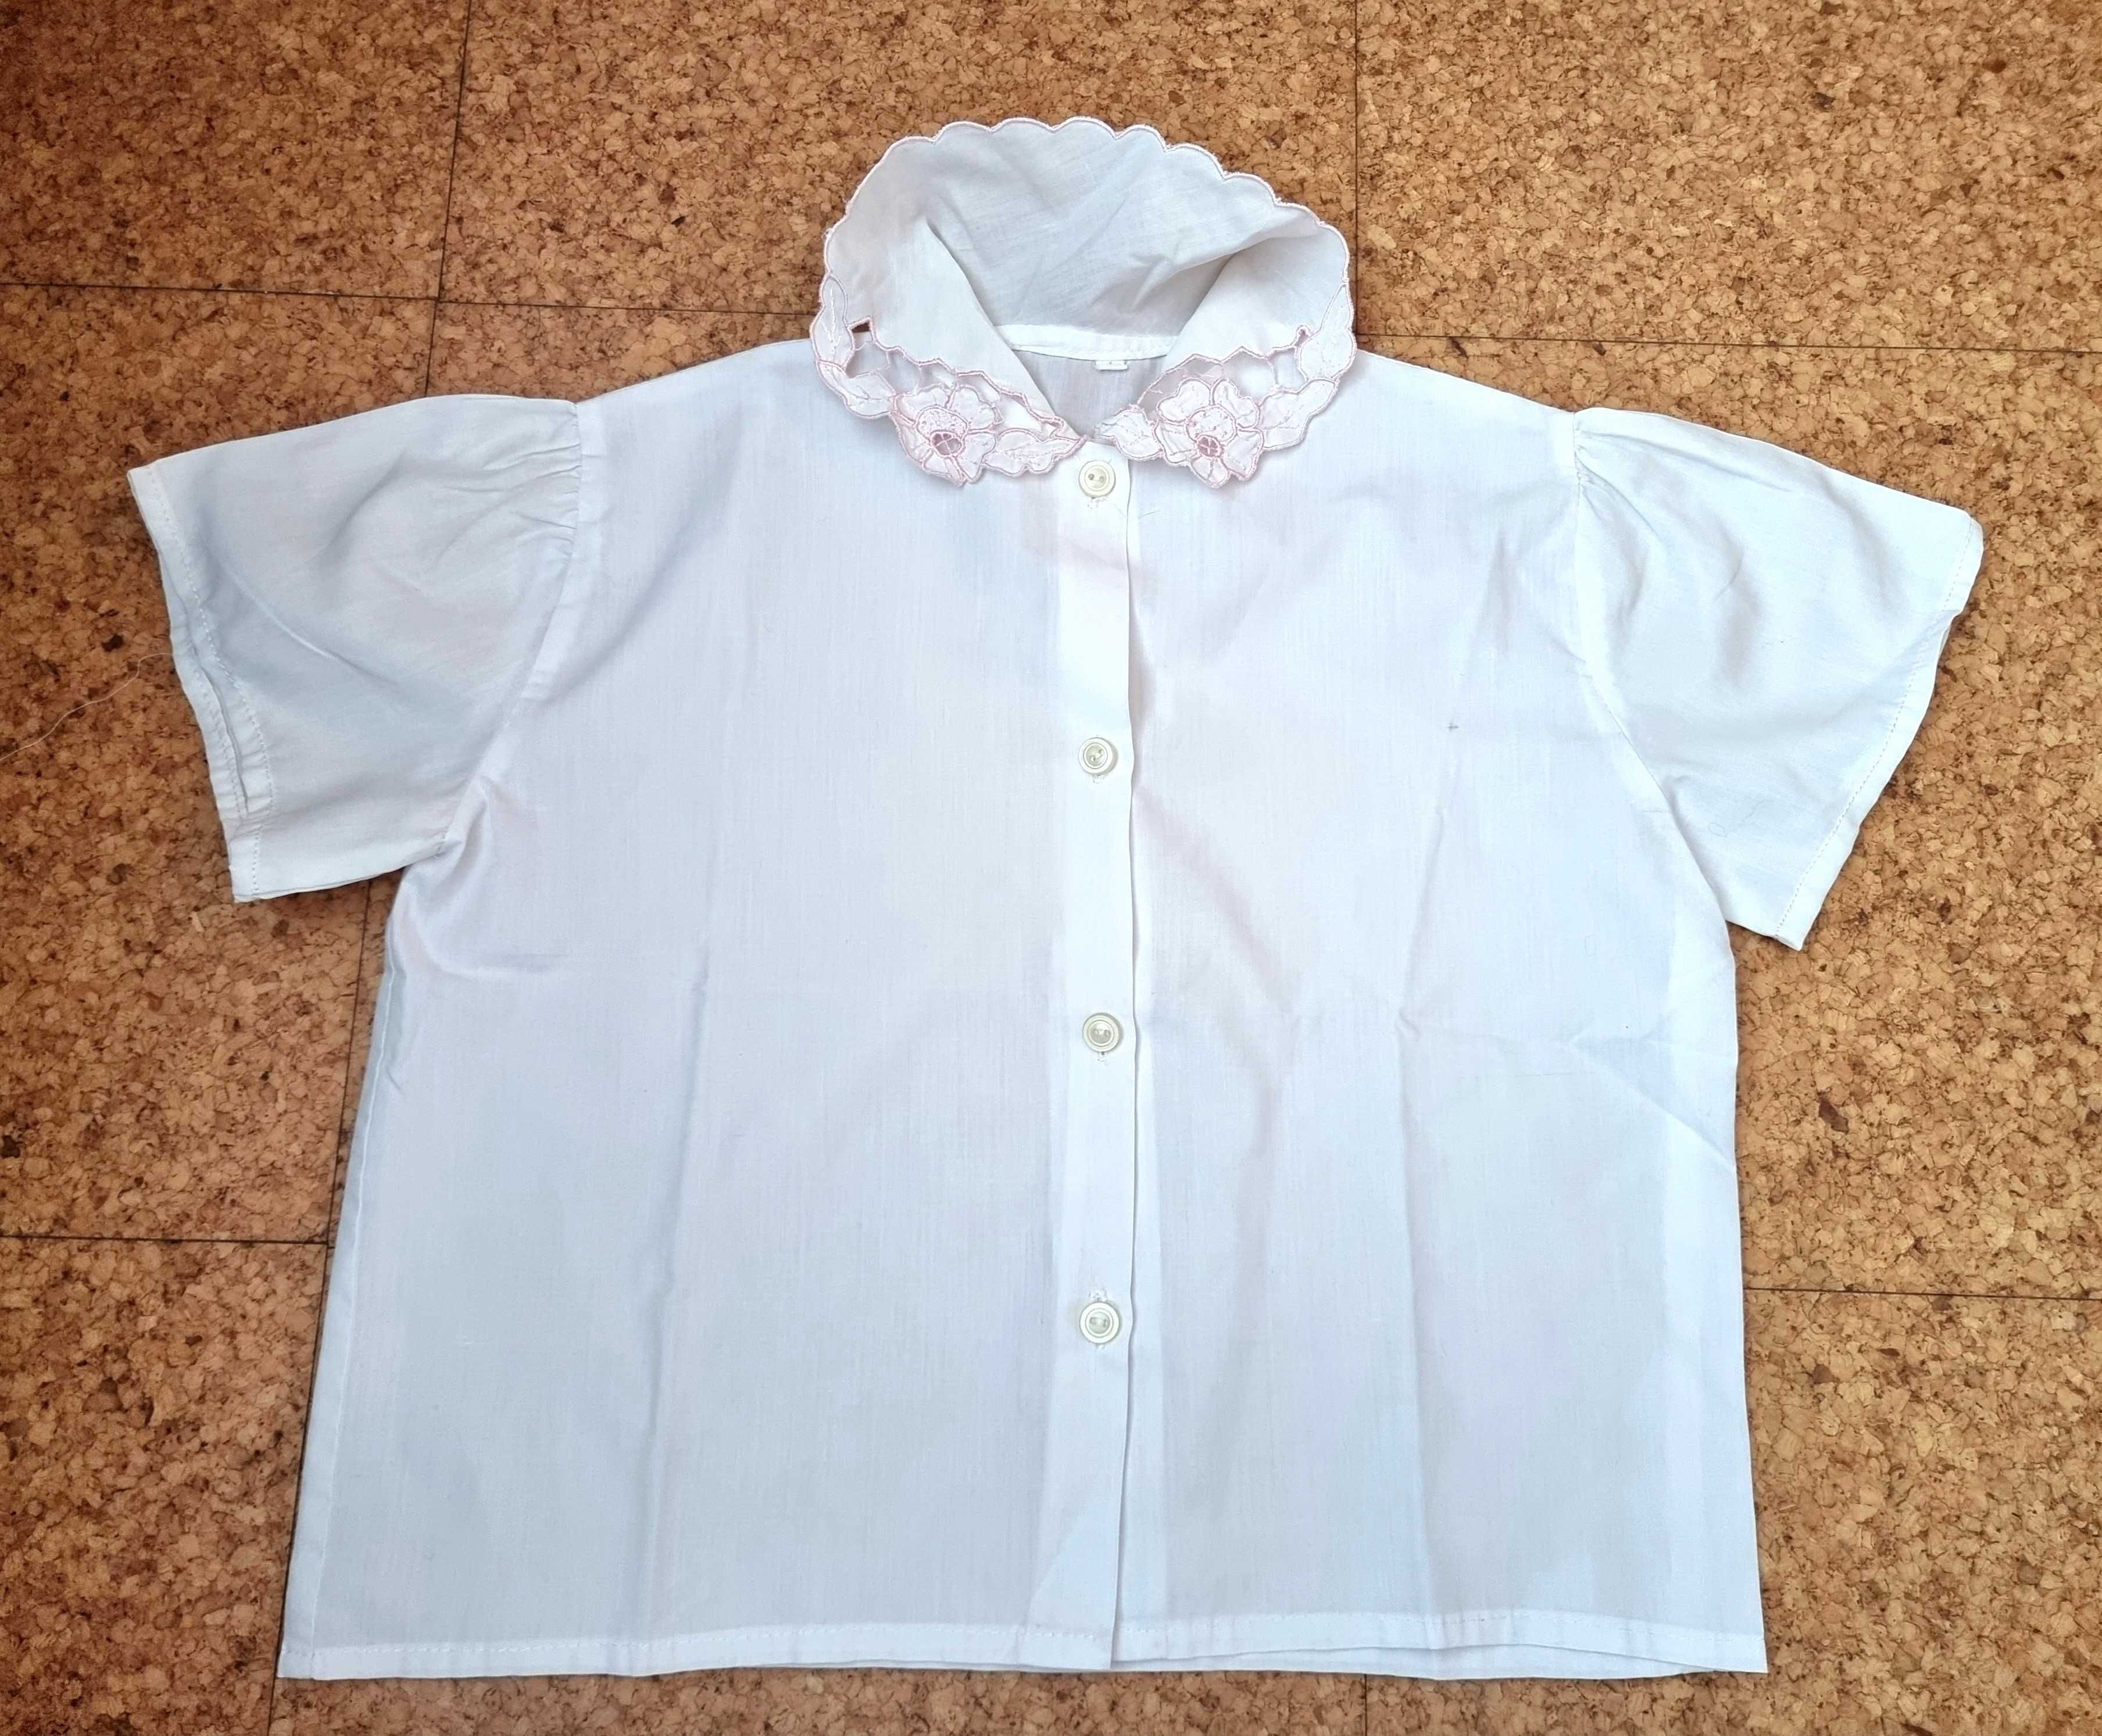 Camisa de manga curta branca com detalhes rosa, 4 anos